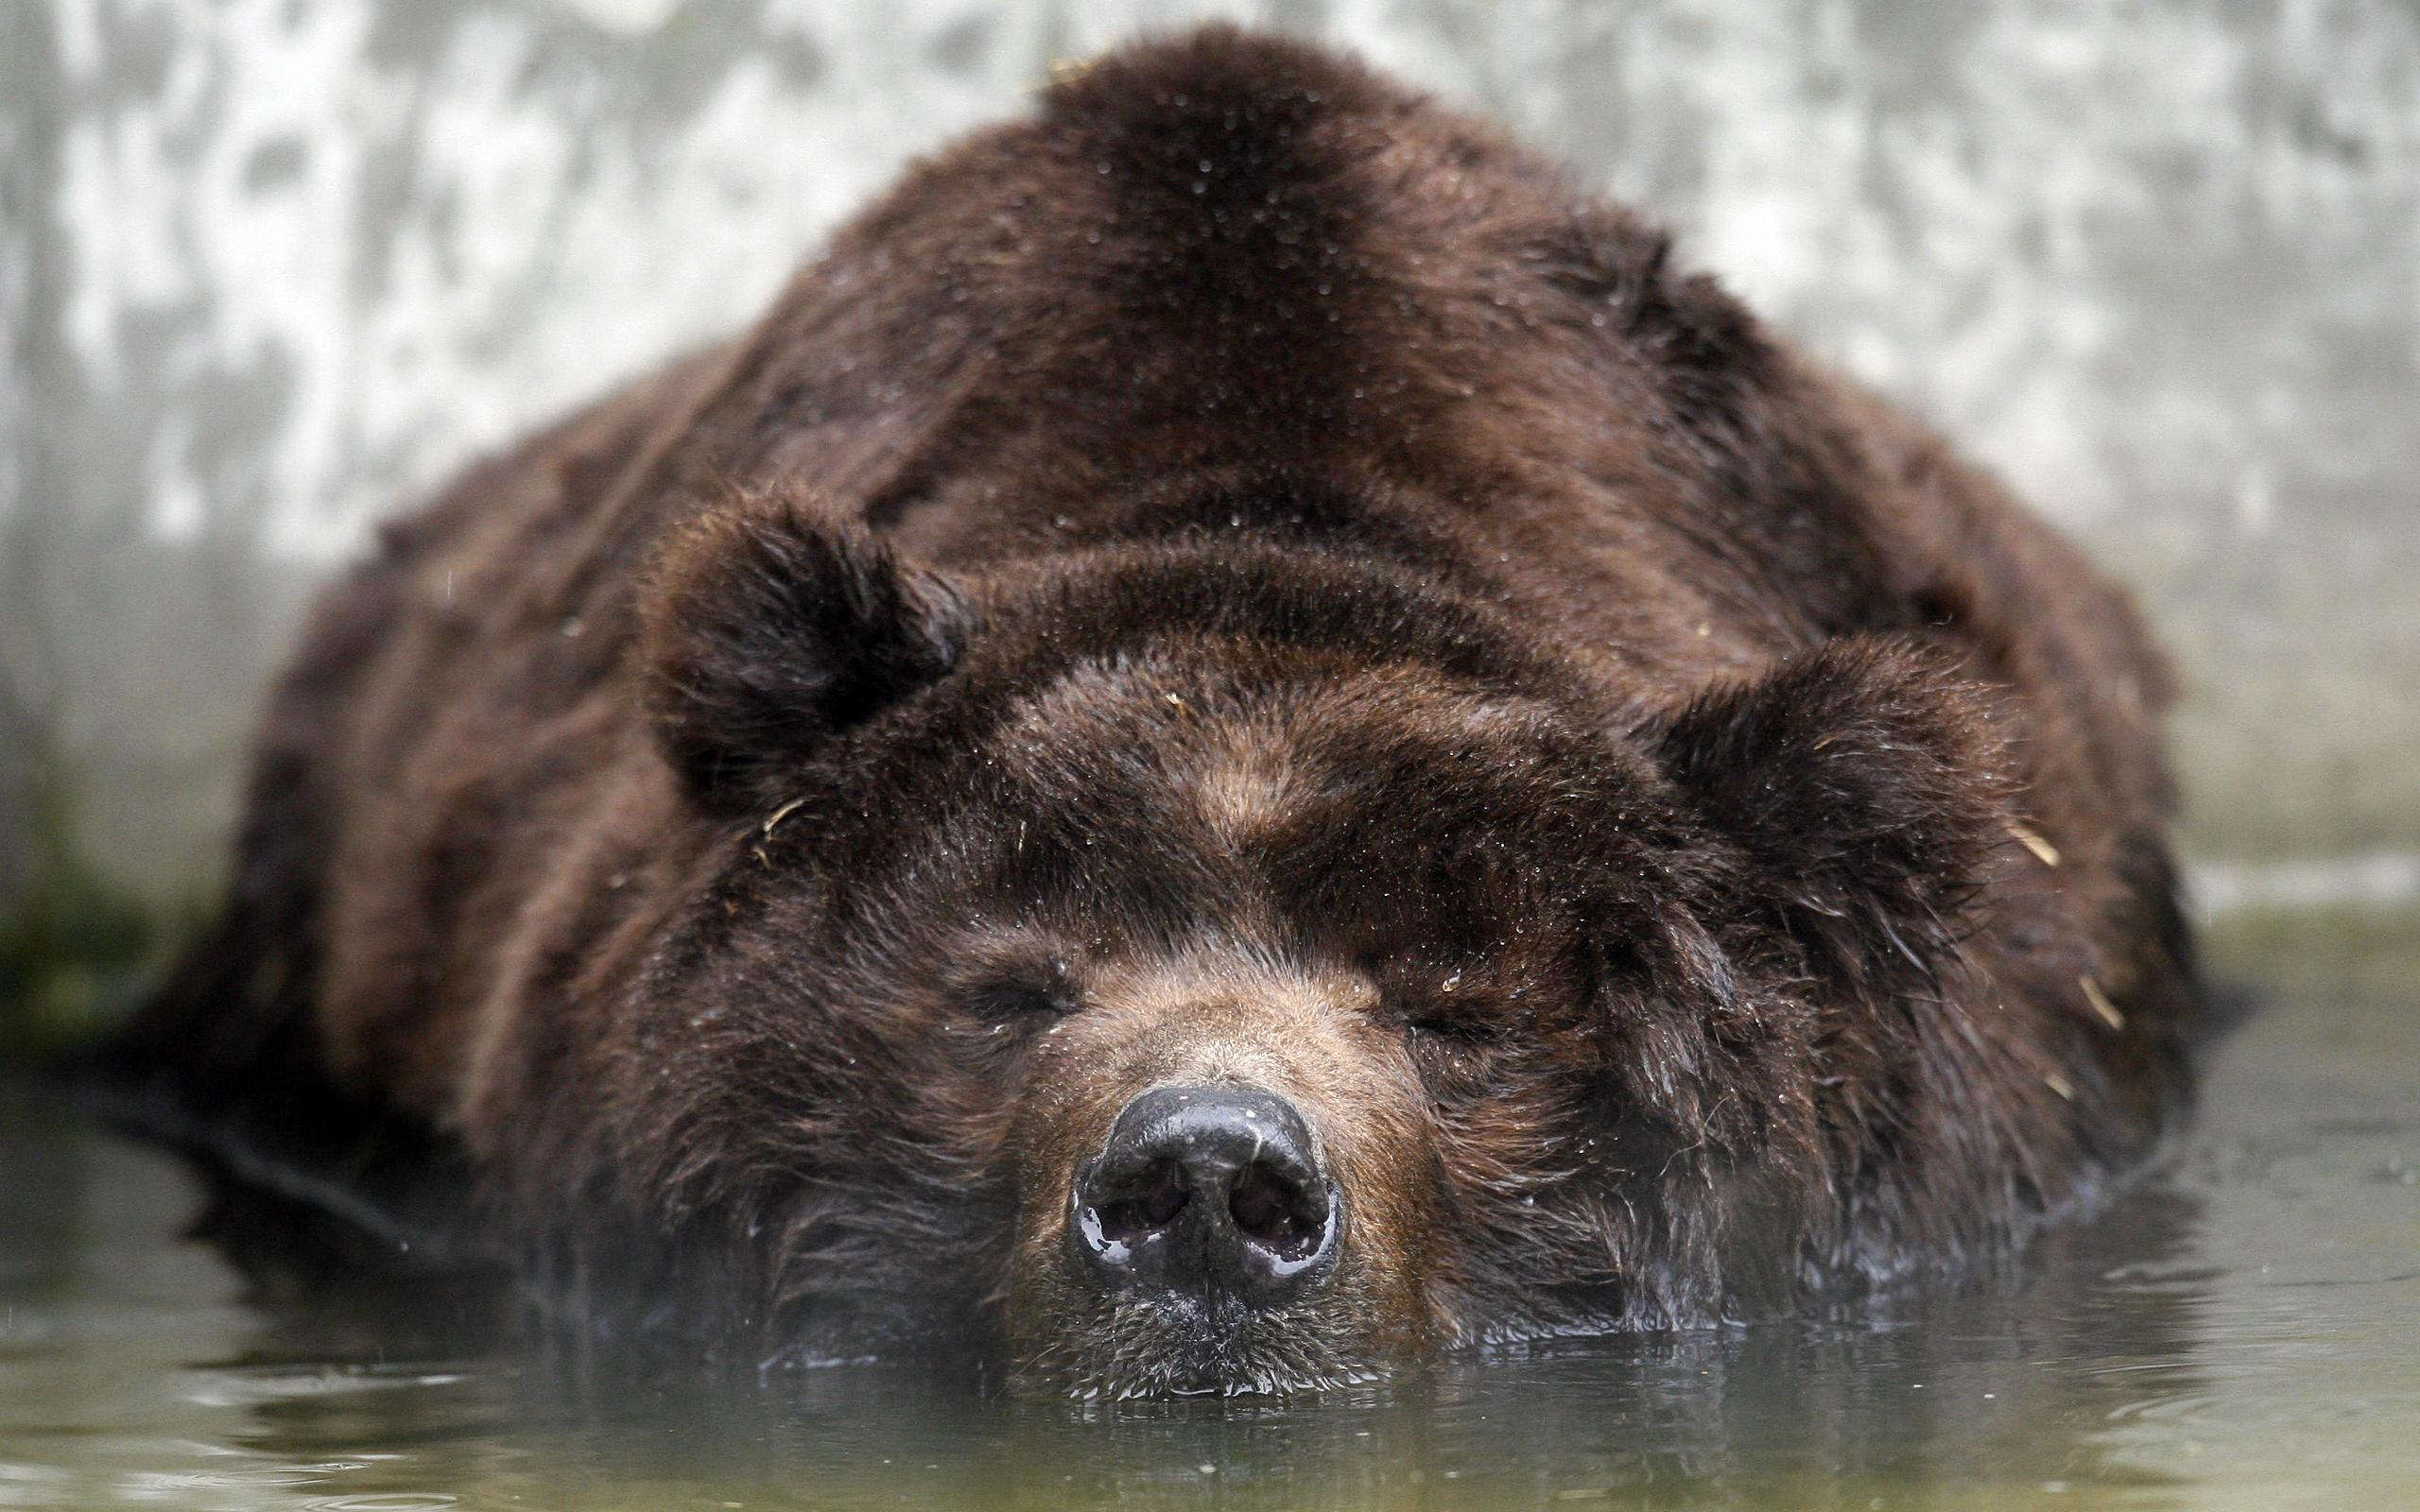 grizzly bears, bears - desktop wallpaper